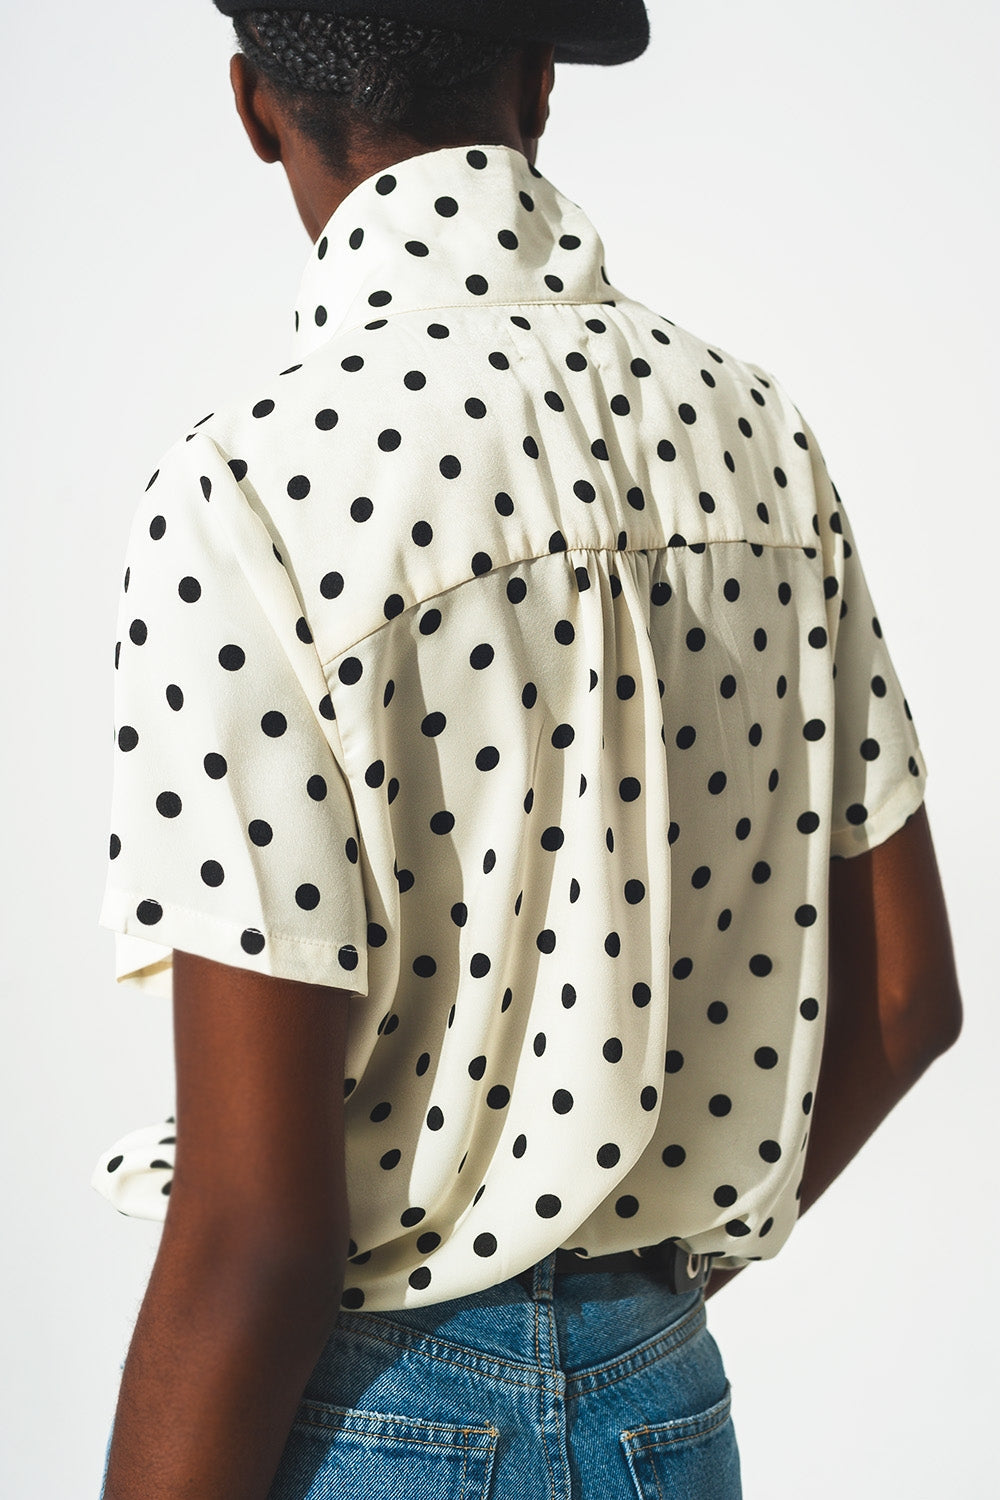 Polka Dot Shirt in Cream